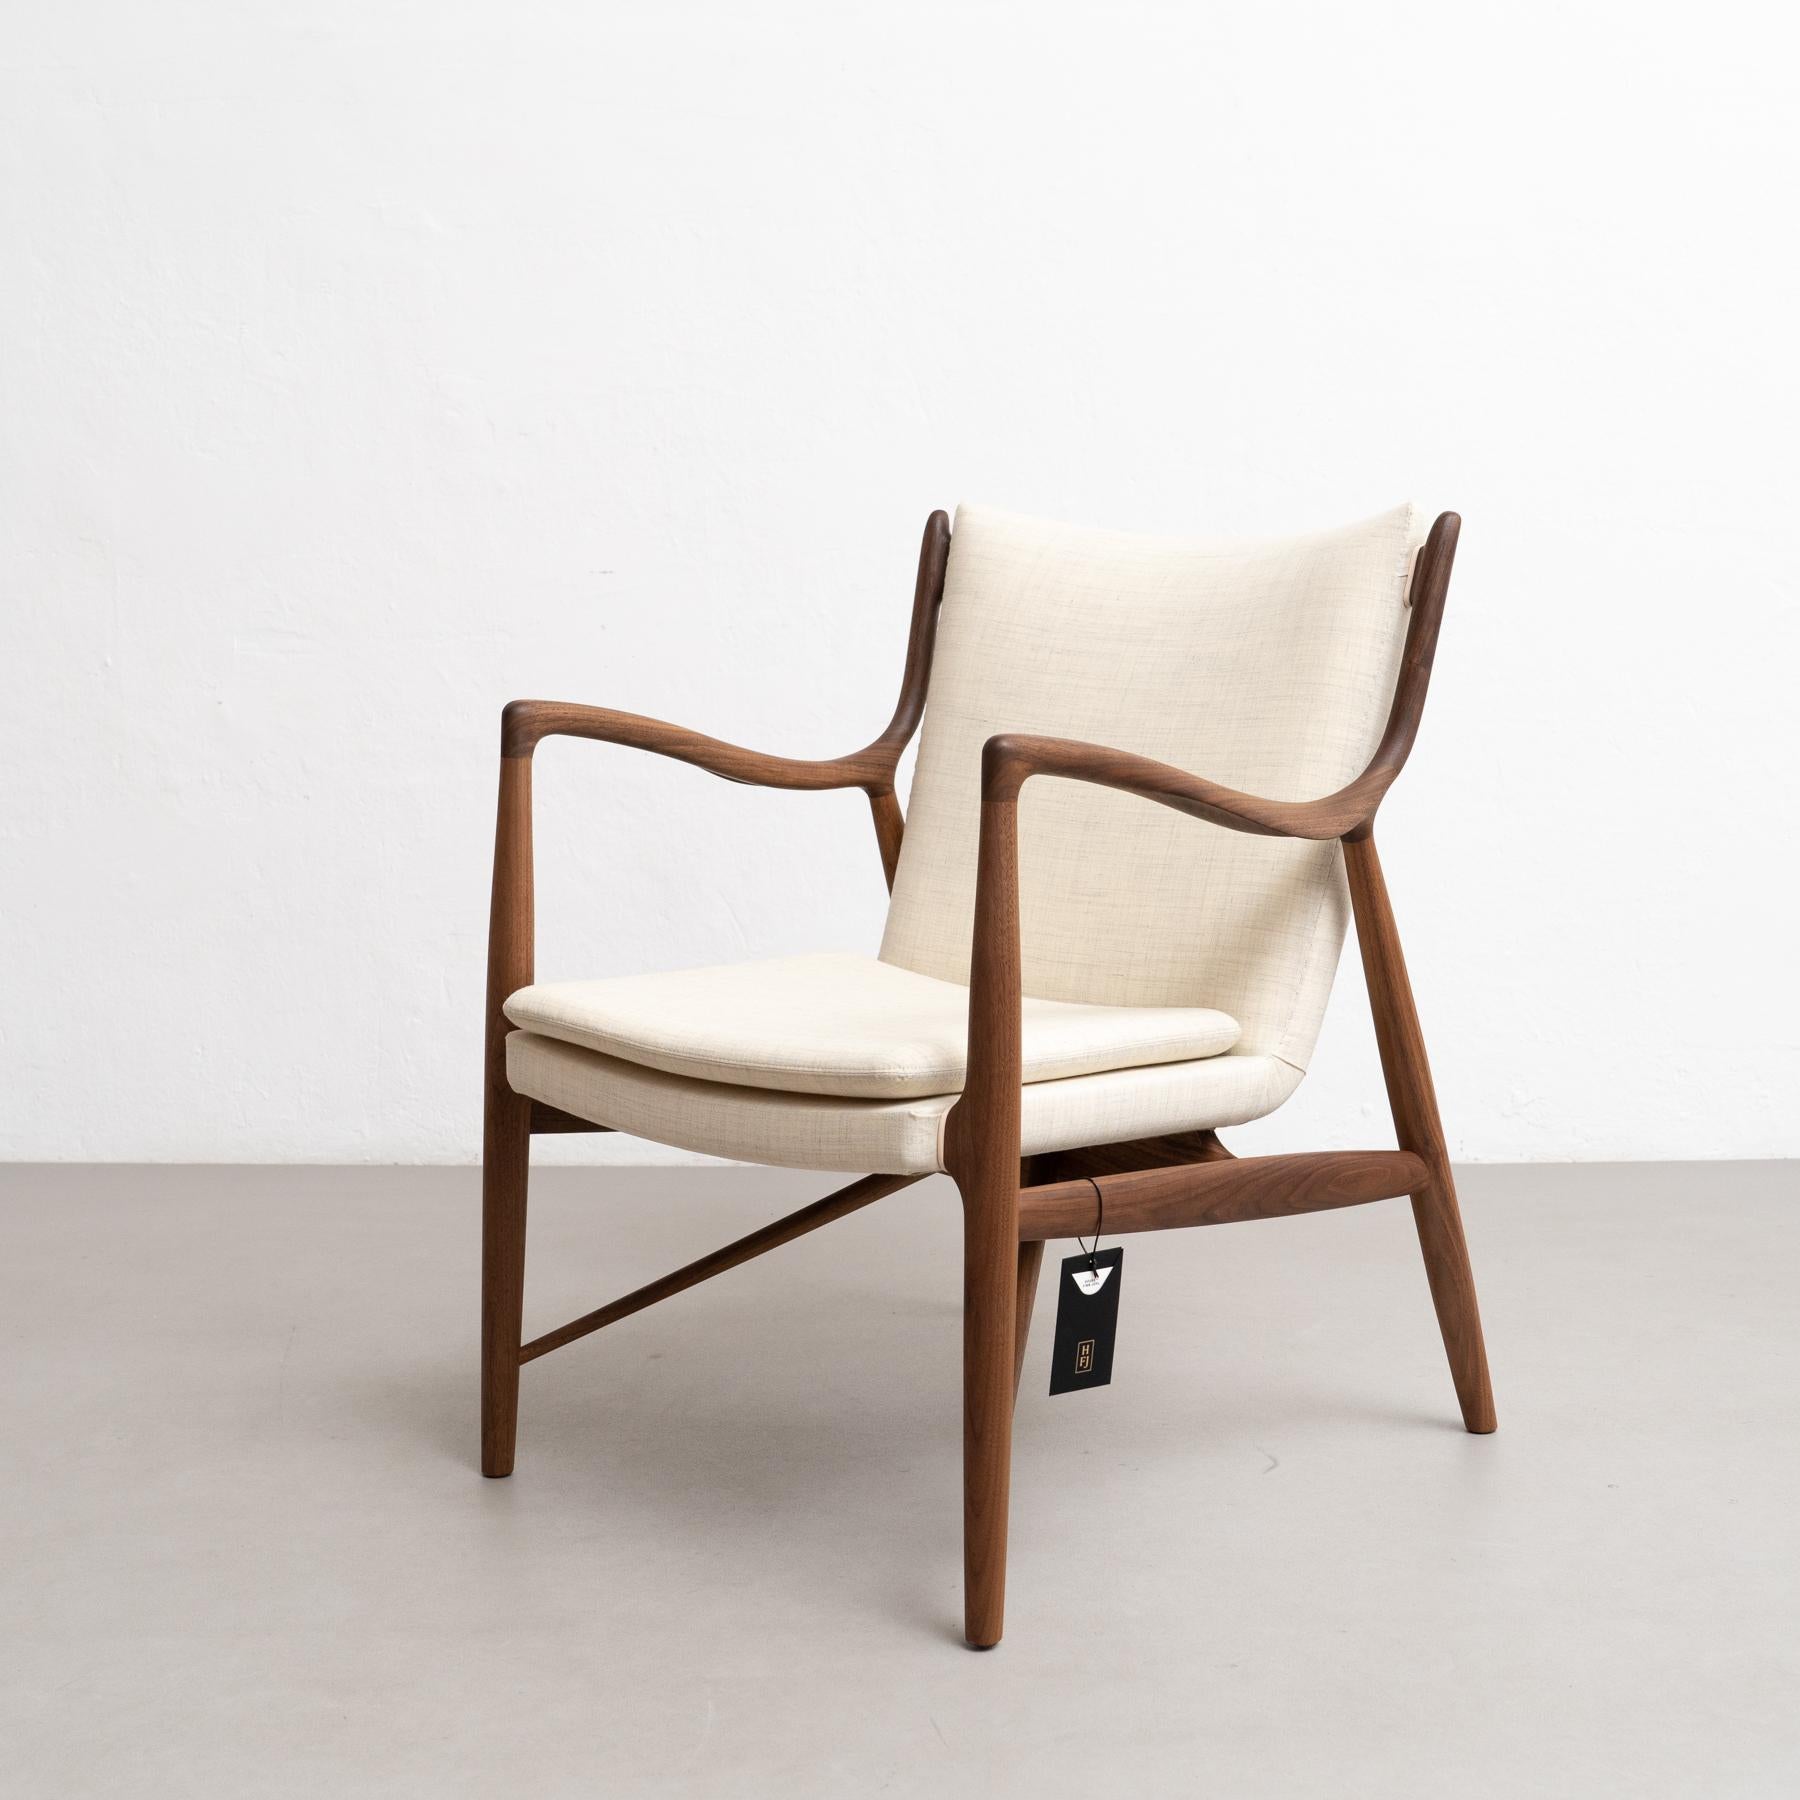 Stuhl, 1945 von Finn Juhl entworfen, 2003 neu aufgelegt.
Hergestellt von House of Finn Juhls in Dänemark.

Im Herbst 1945 stellte Finn Juhls den Stuhl 45 auf der jährlichen Ausstellung der Cabinetmakers' Guild vor. Heute gilt der Stuhl weithin